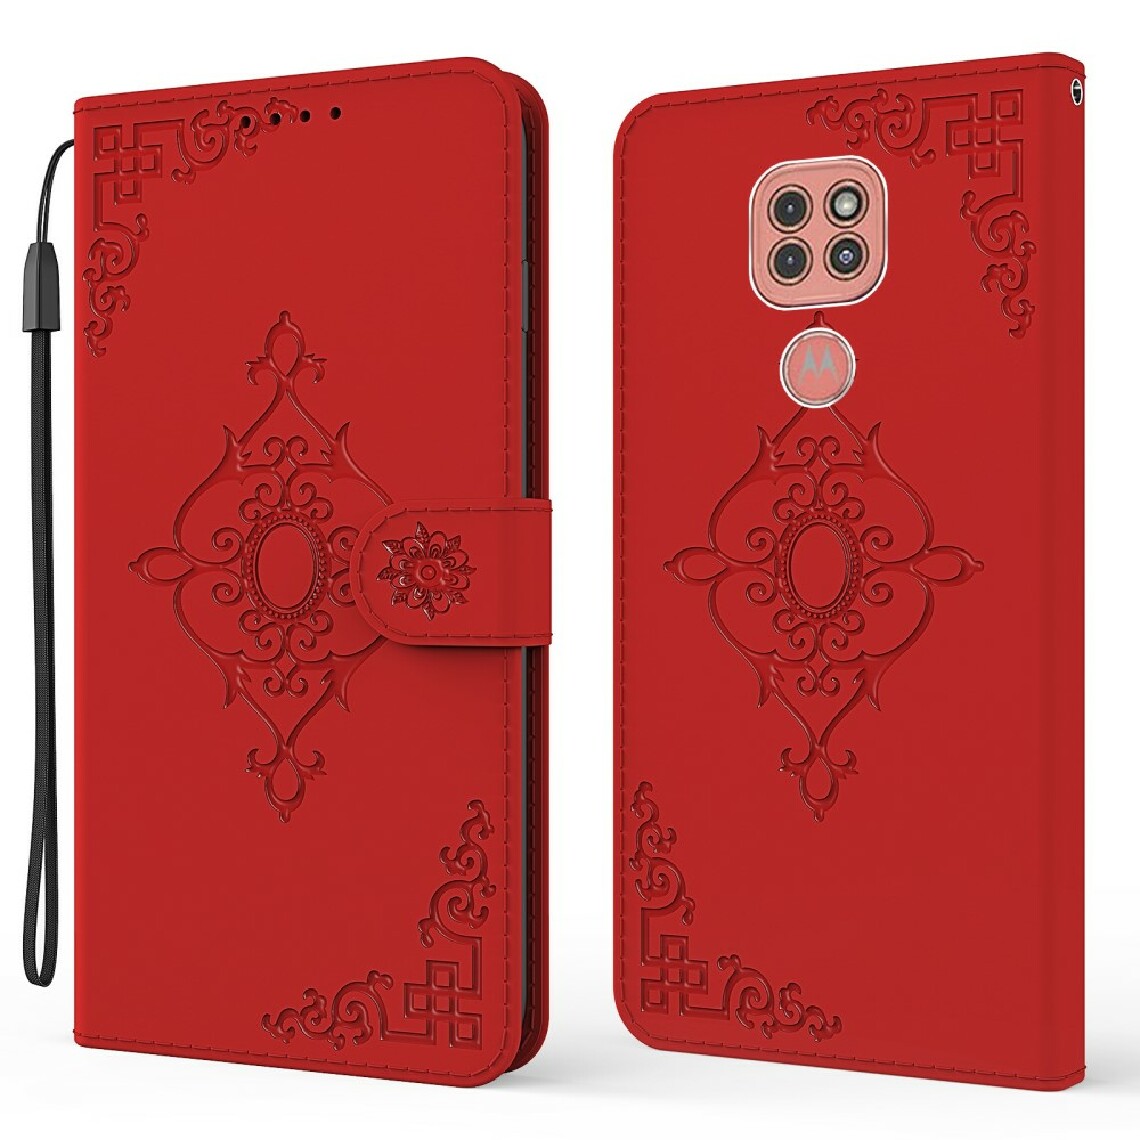 Other - Etui en PU impression de motif symétrique rouge pour votre Motorola Moto G9 Play - Coque, étui smartphone